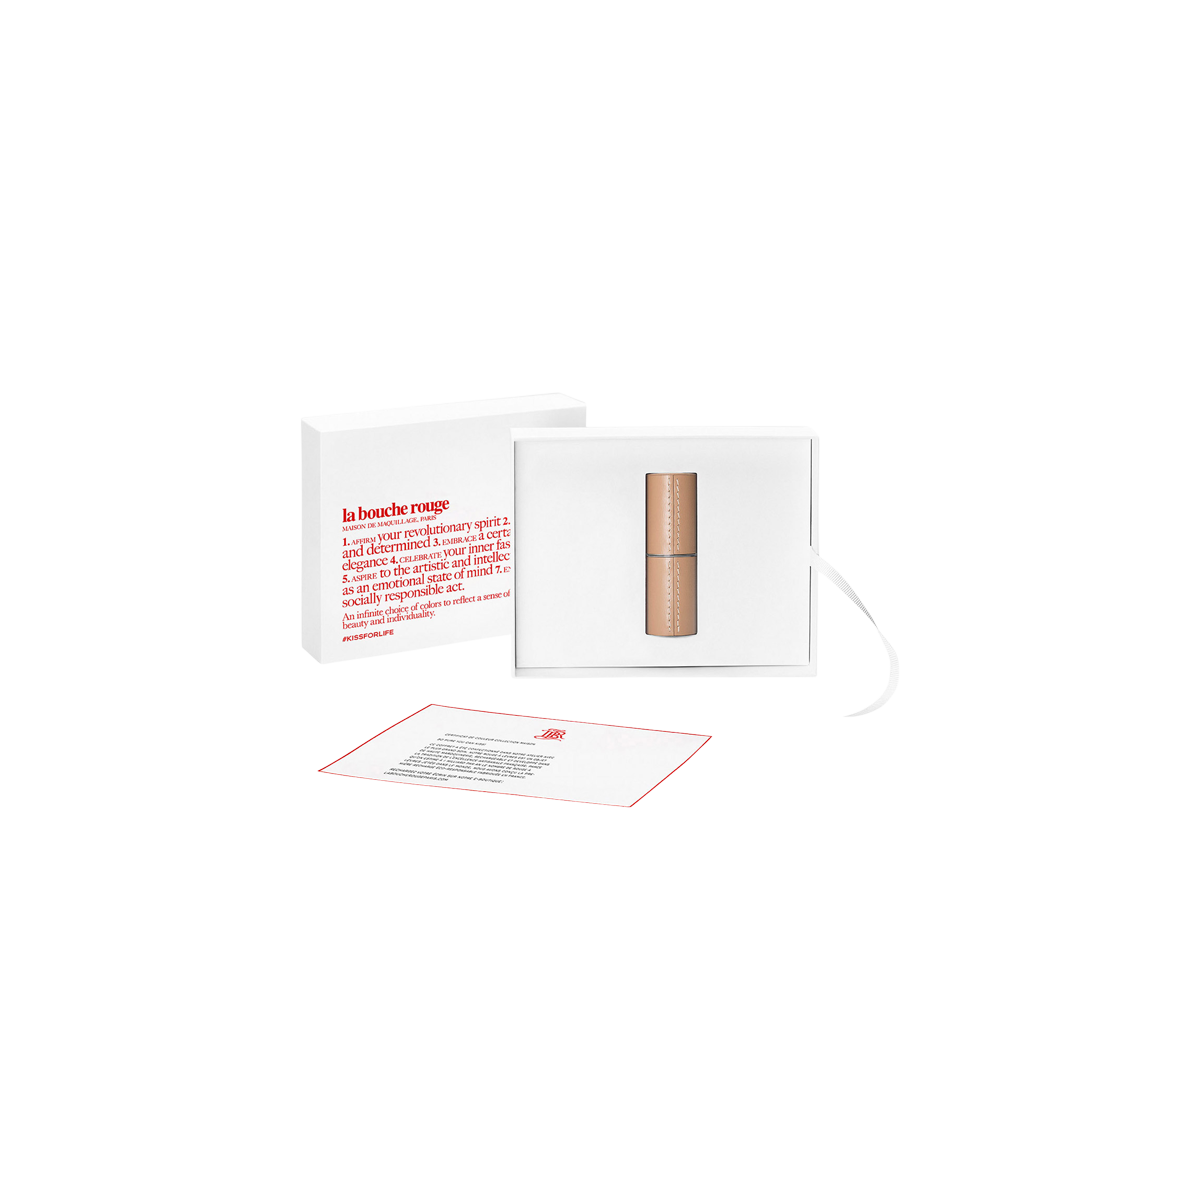 la bouche rouge, Paris - Refillable Camel Leather Lipstick Case